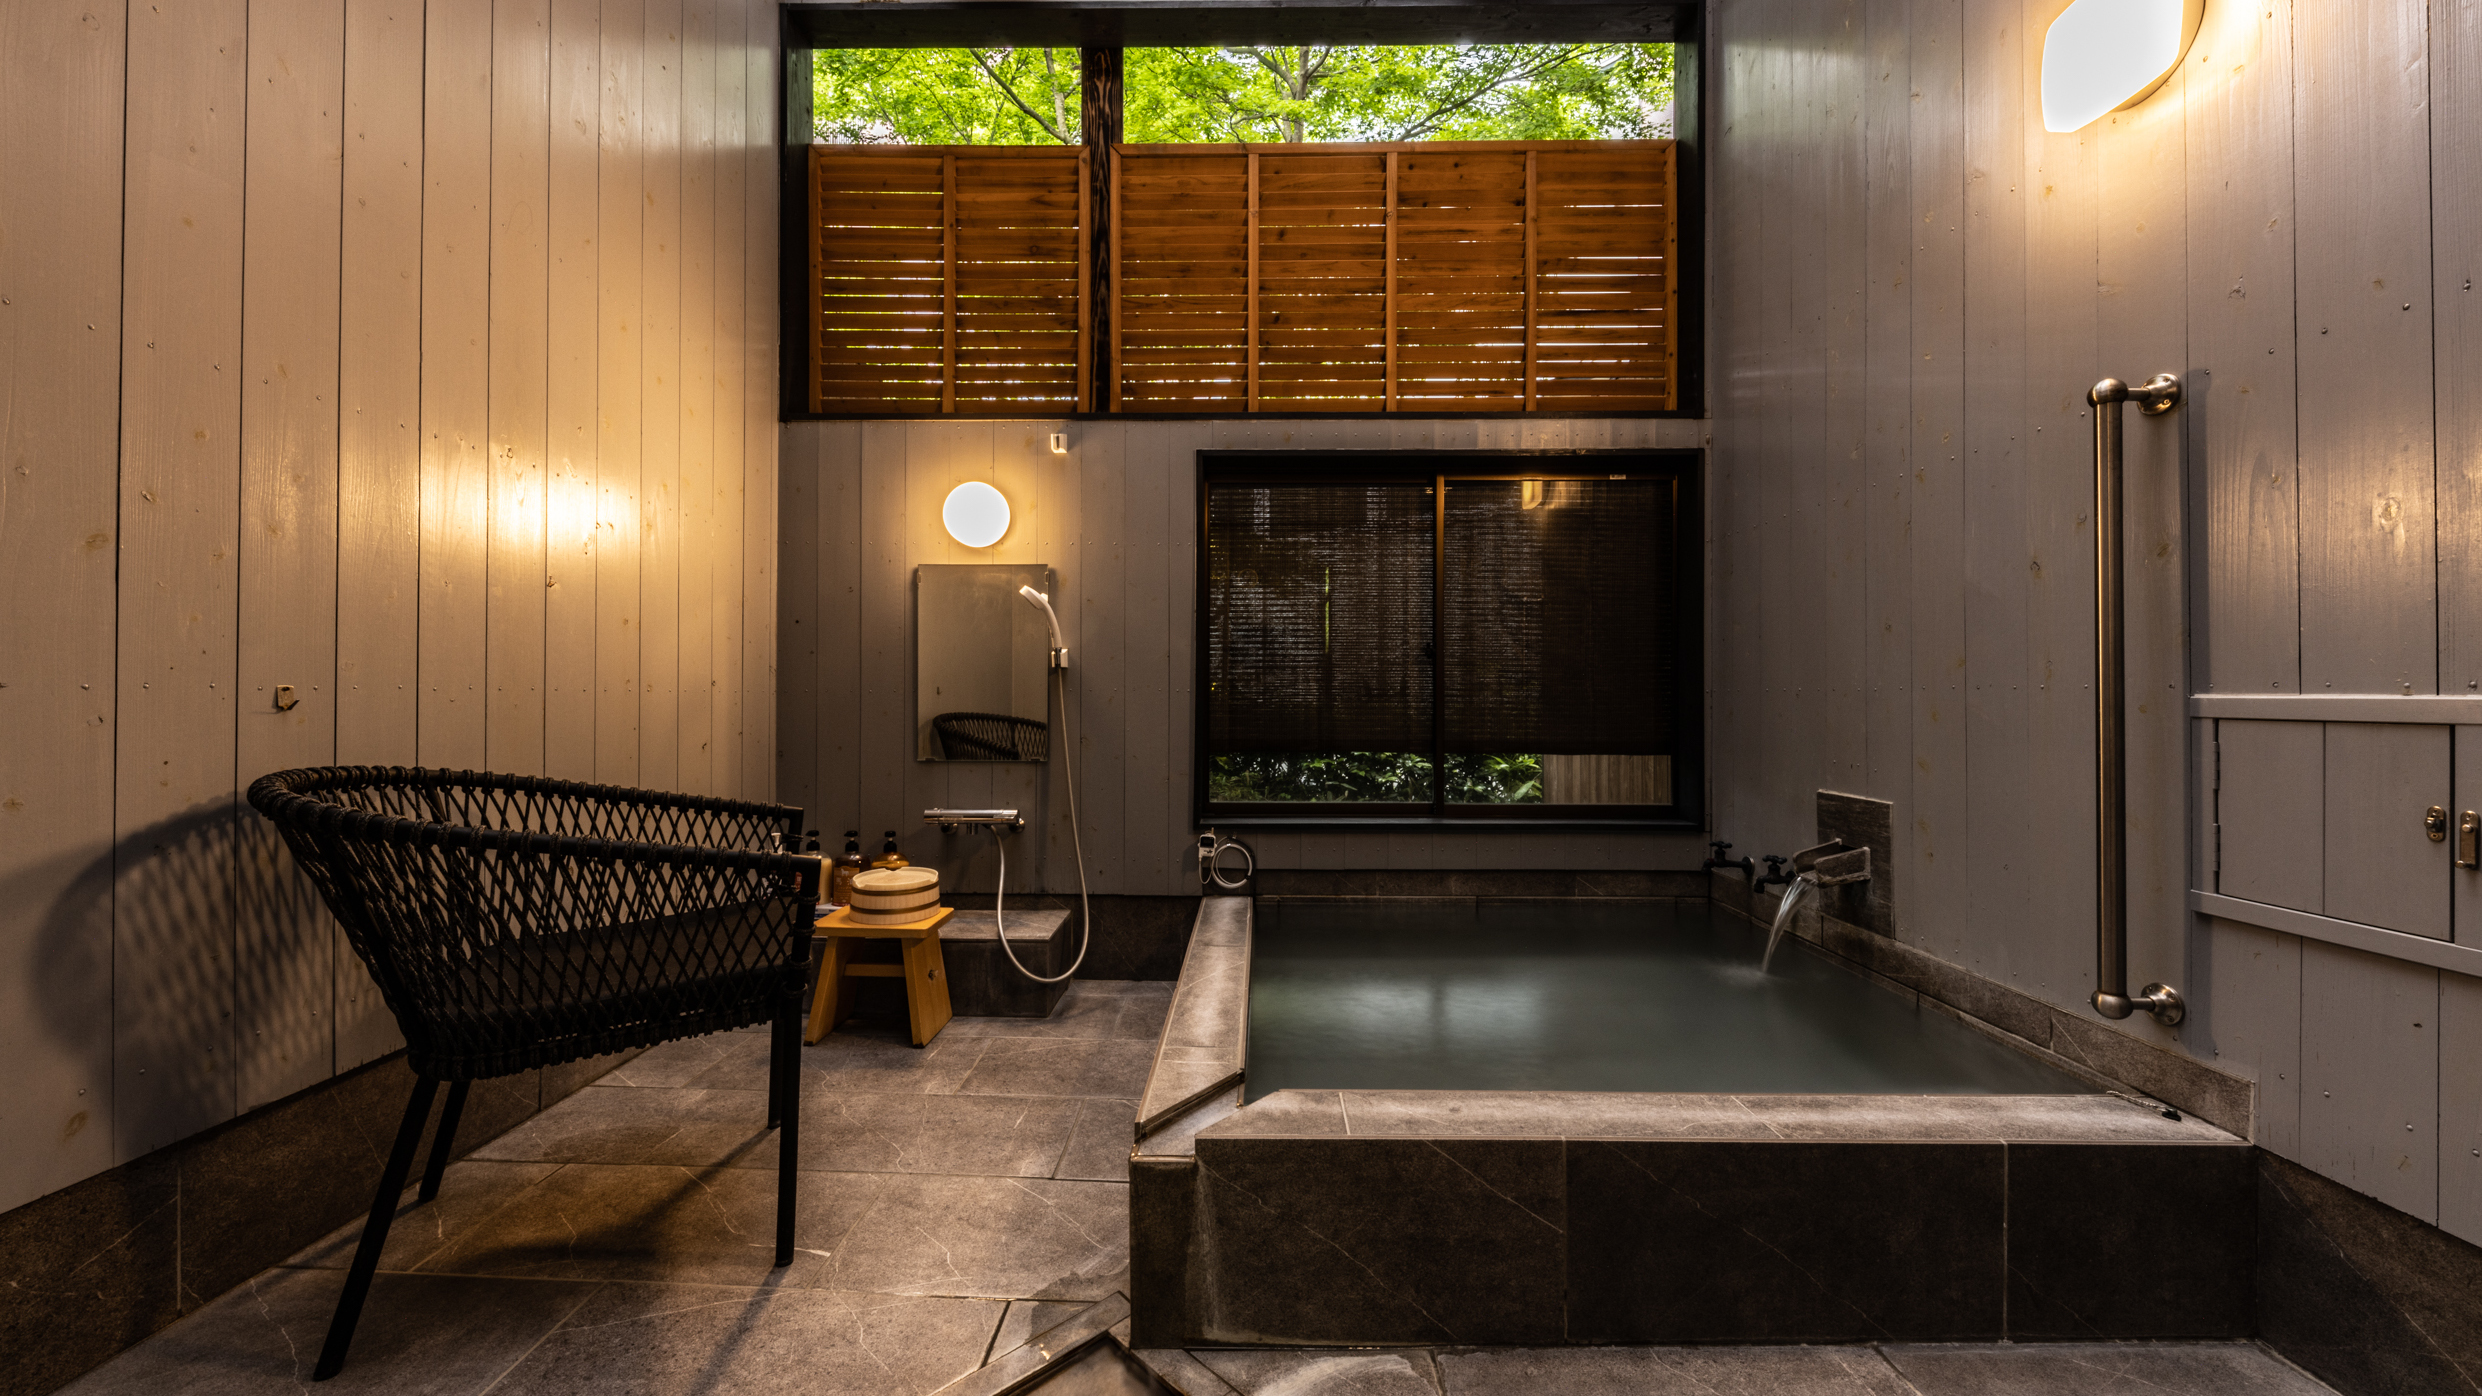 貸切風呂「島津」約300年の歴史ー薩摩の殿湯をご堪能下さい。